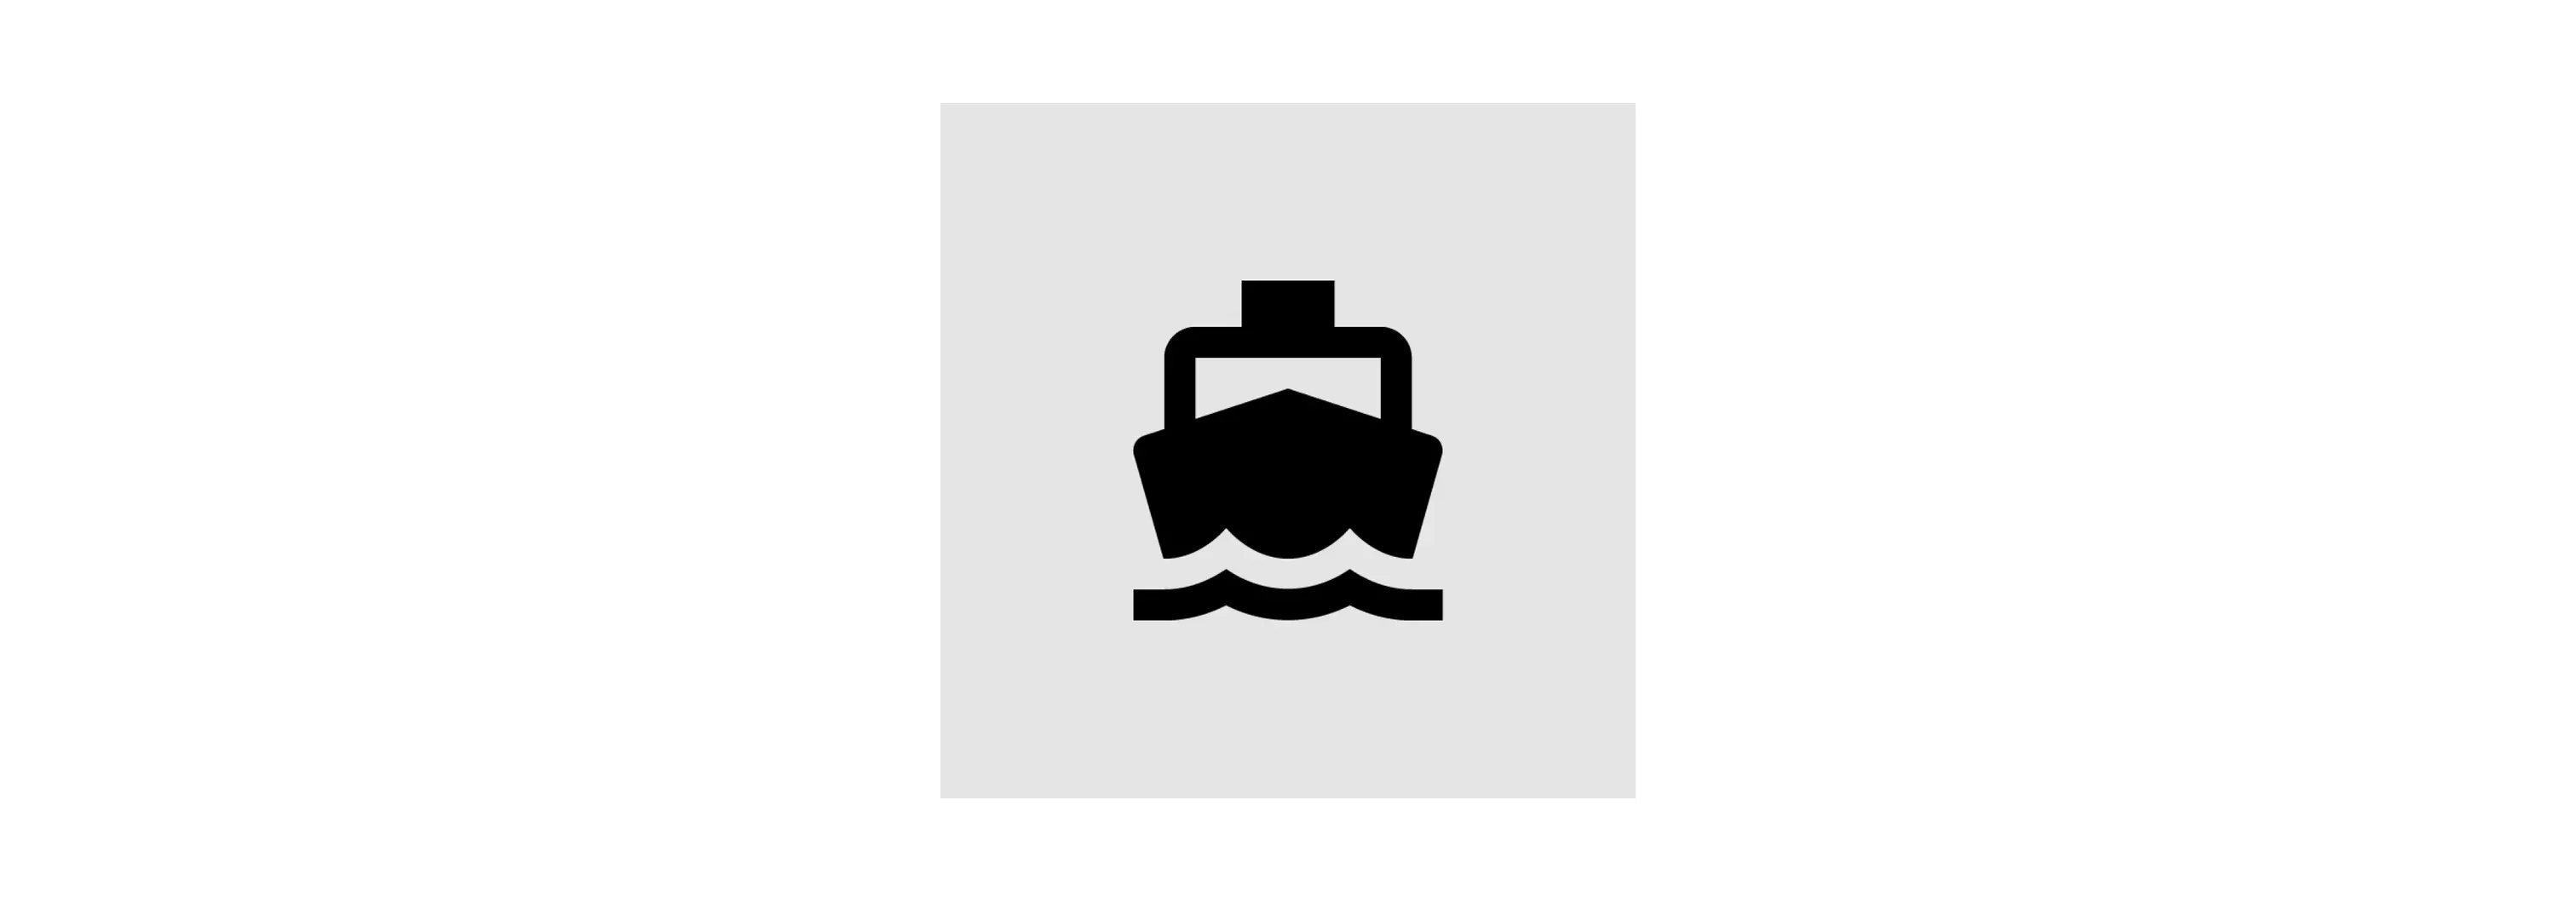 简洁的船 icon （来自： [Material](https://material.io/design/iconography/system-icons.html)）